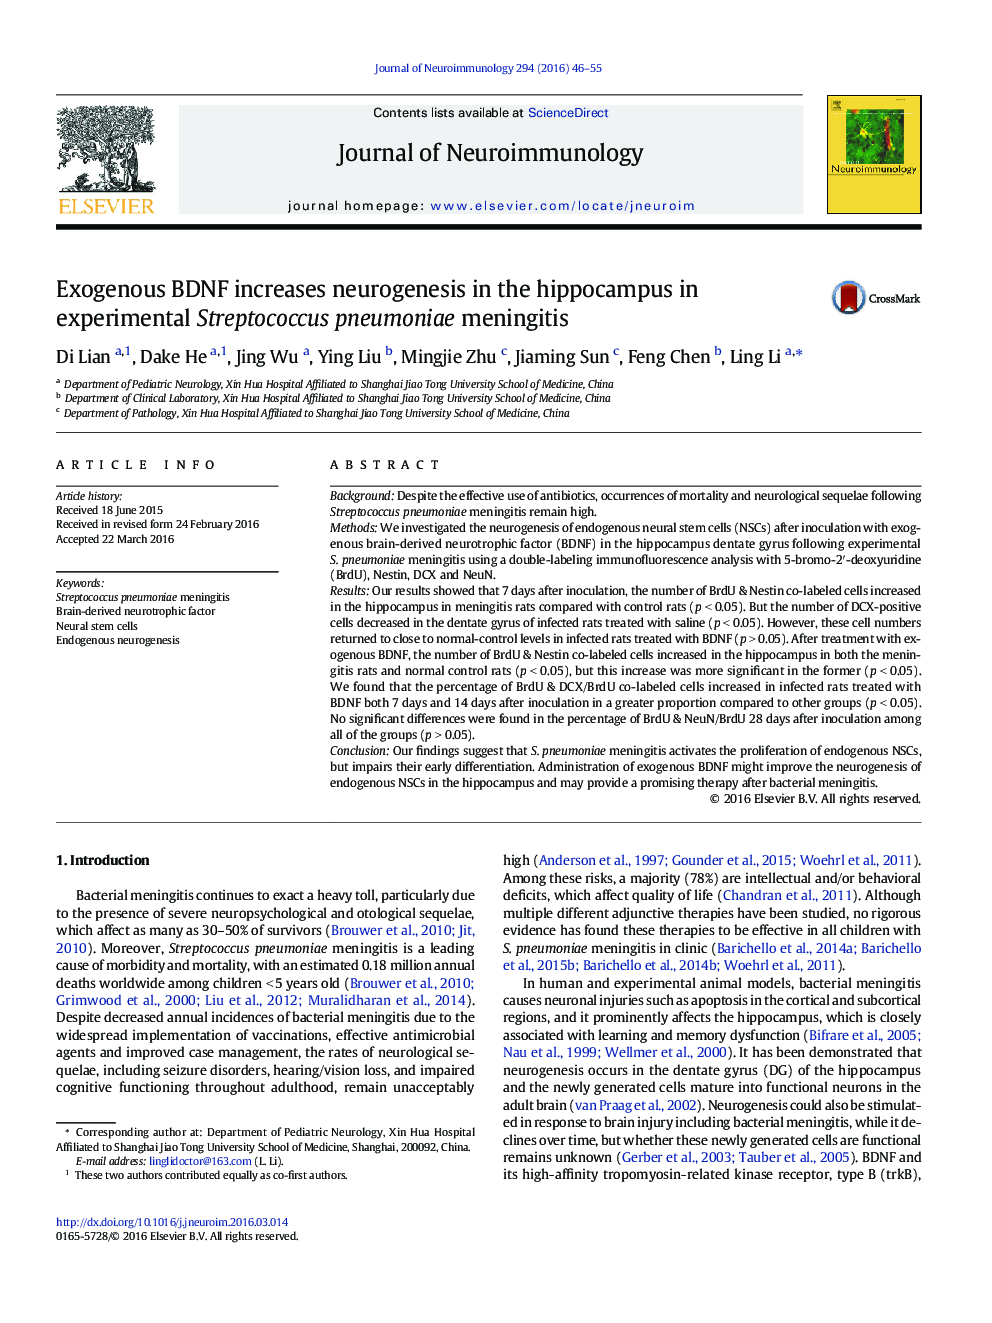 Exogenous BDNF increases neurogenesis in the hippocampus in experimental Streptococcus pneumoniae meningitis